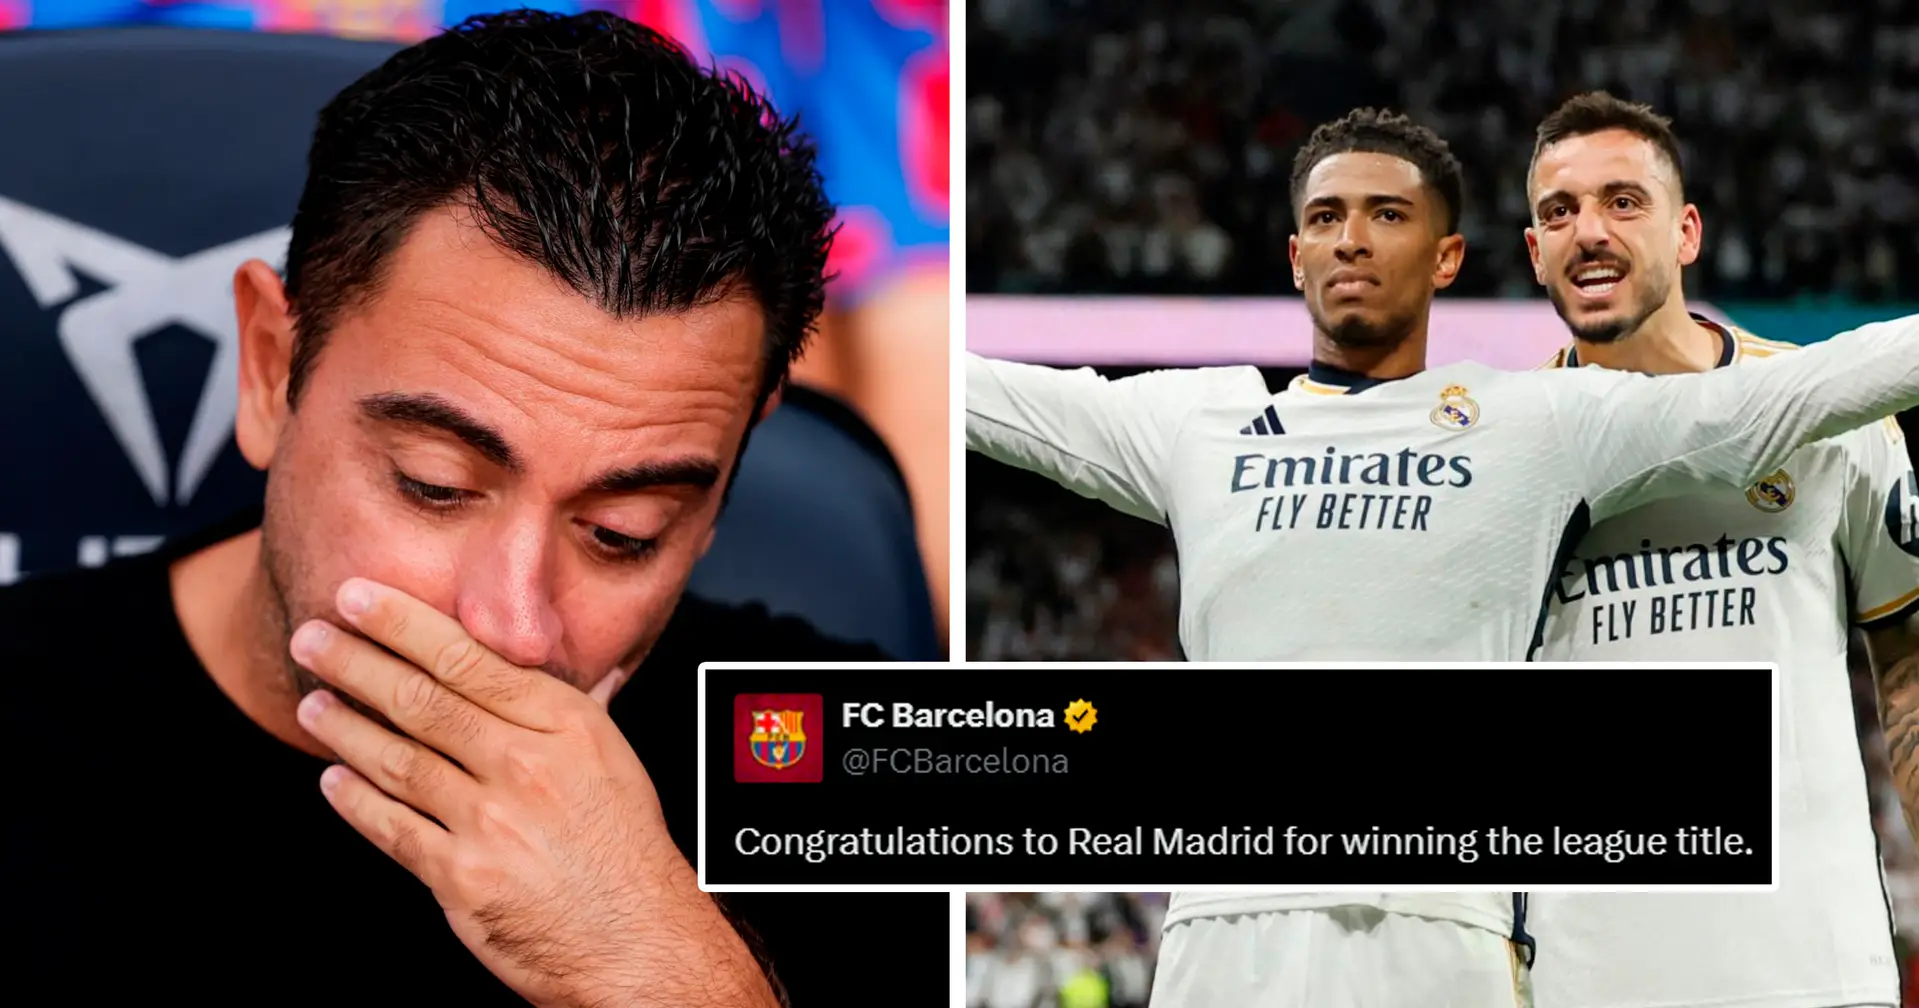 "Félicitations du FC": les fans réagissent alors que Barcelone félicite le Real Madrid pour sa victoire en Liga